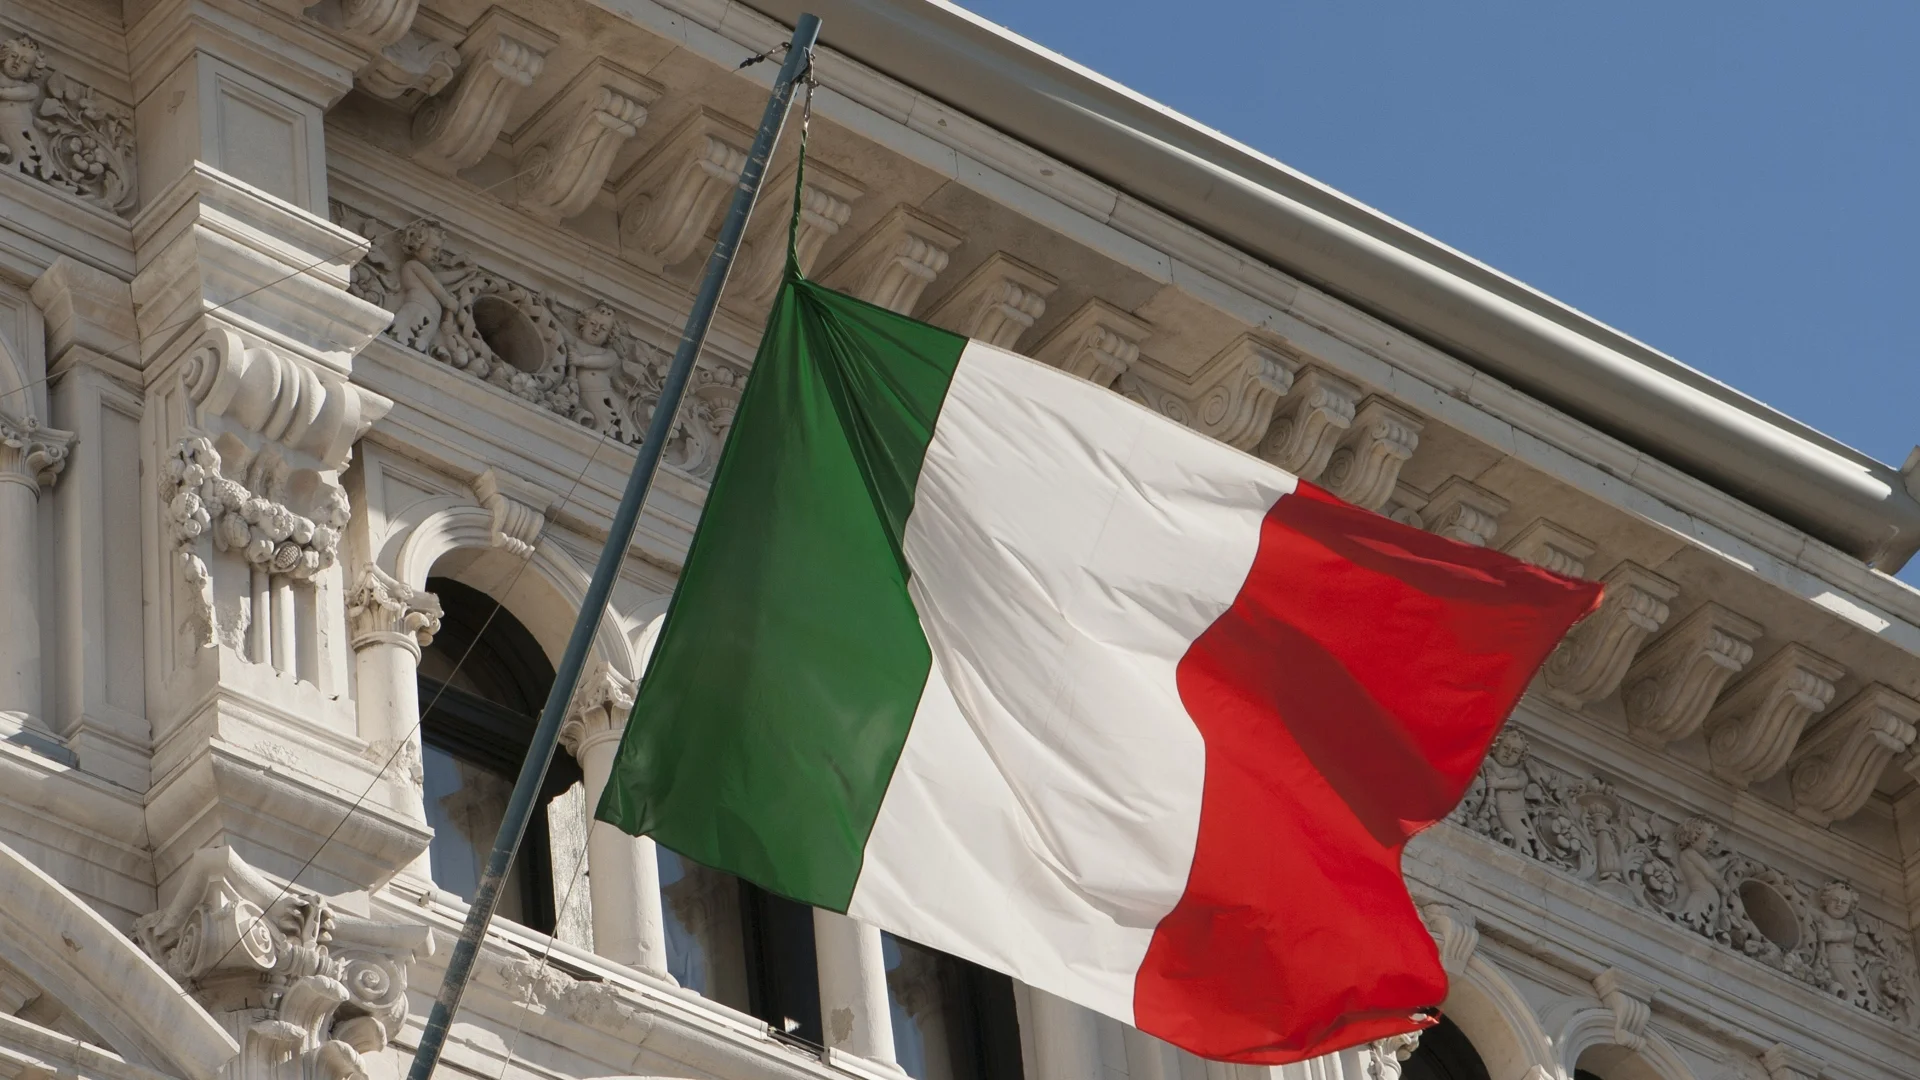 Шефът на италианския Сенат: Фашисткият поздрав не е непременно престъпление